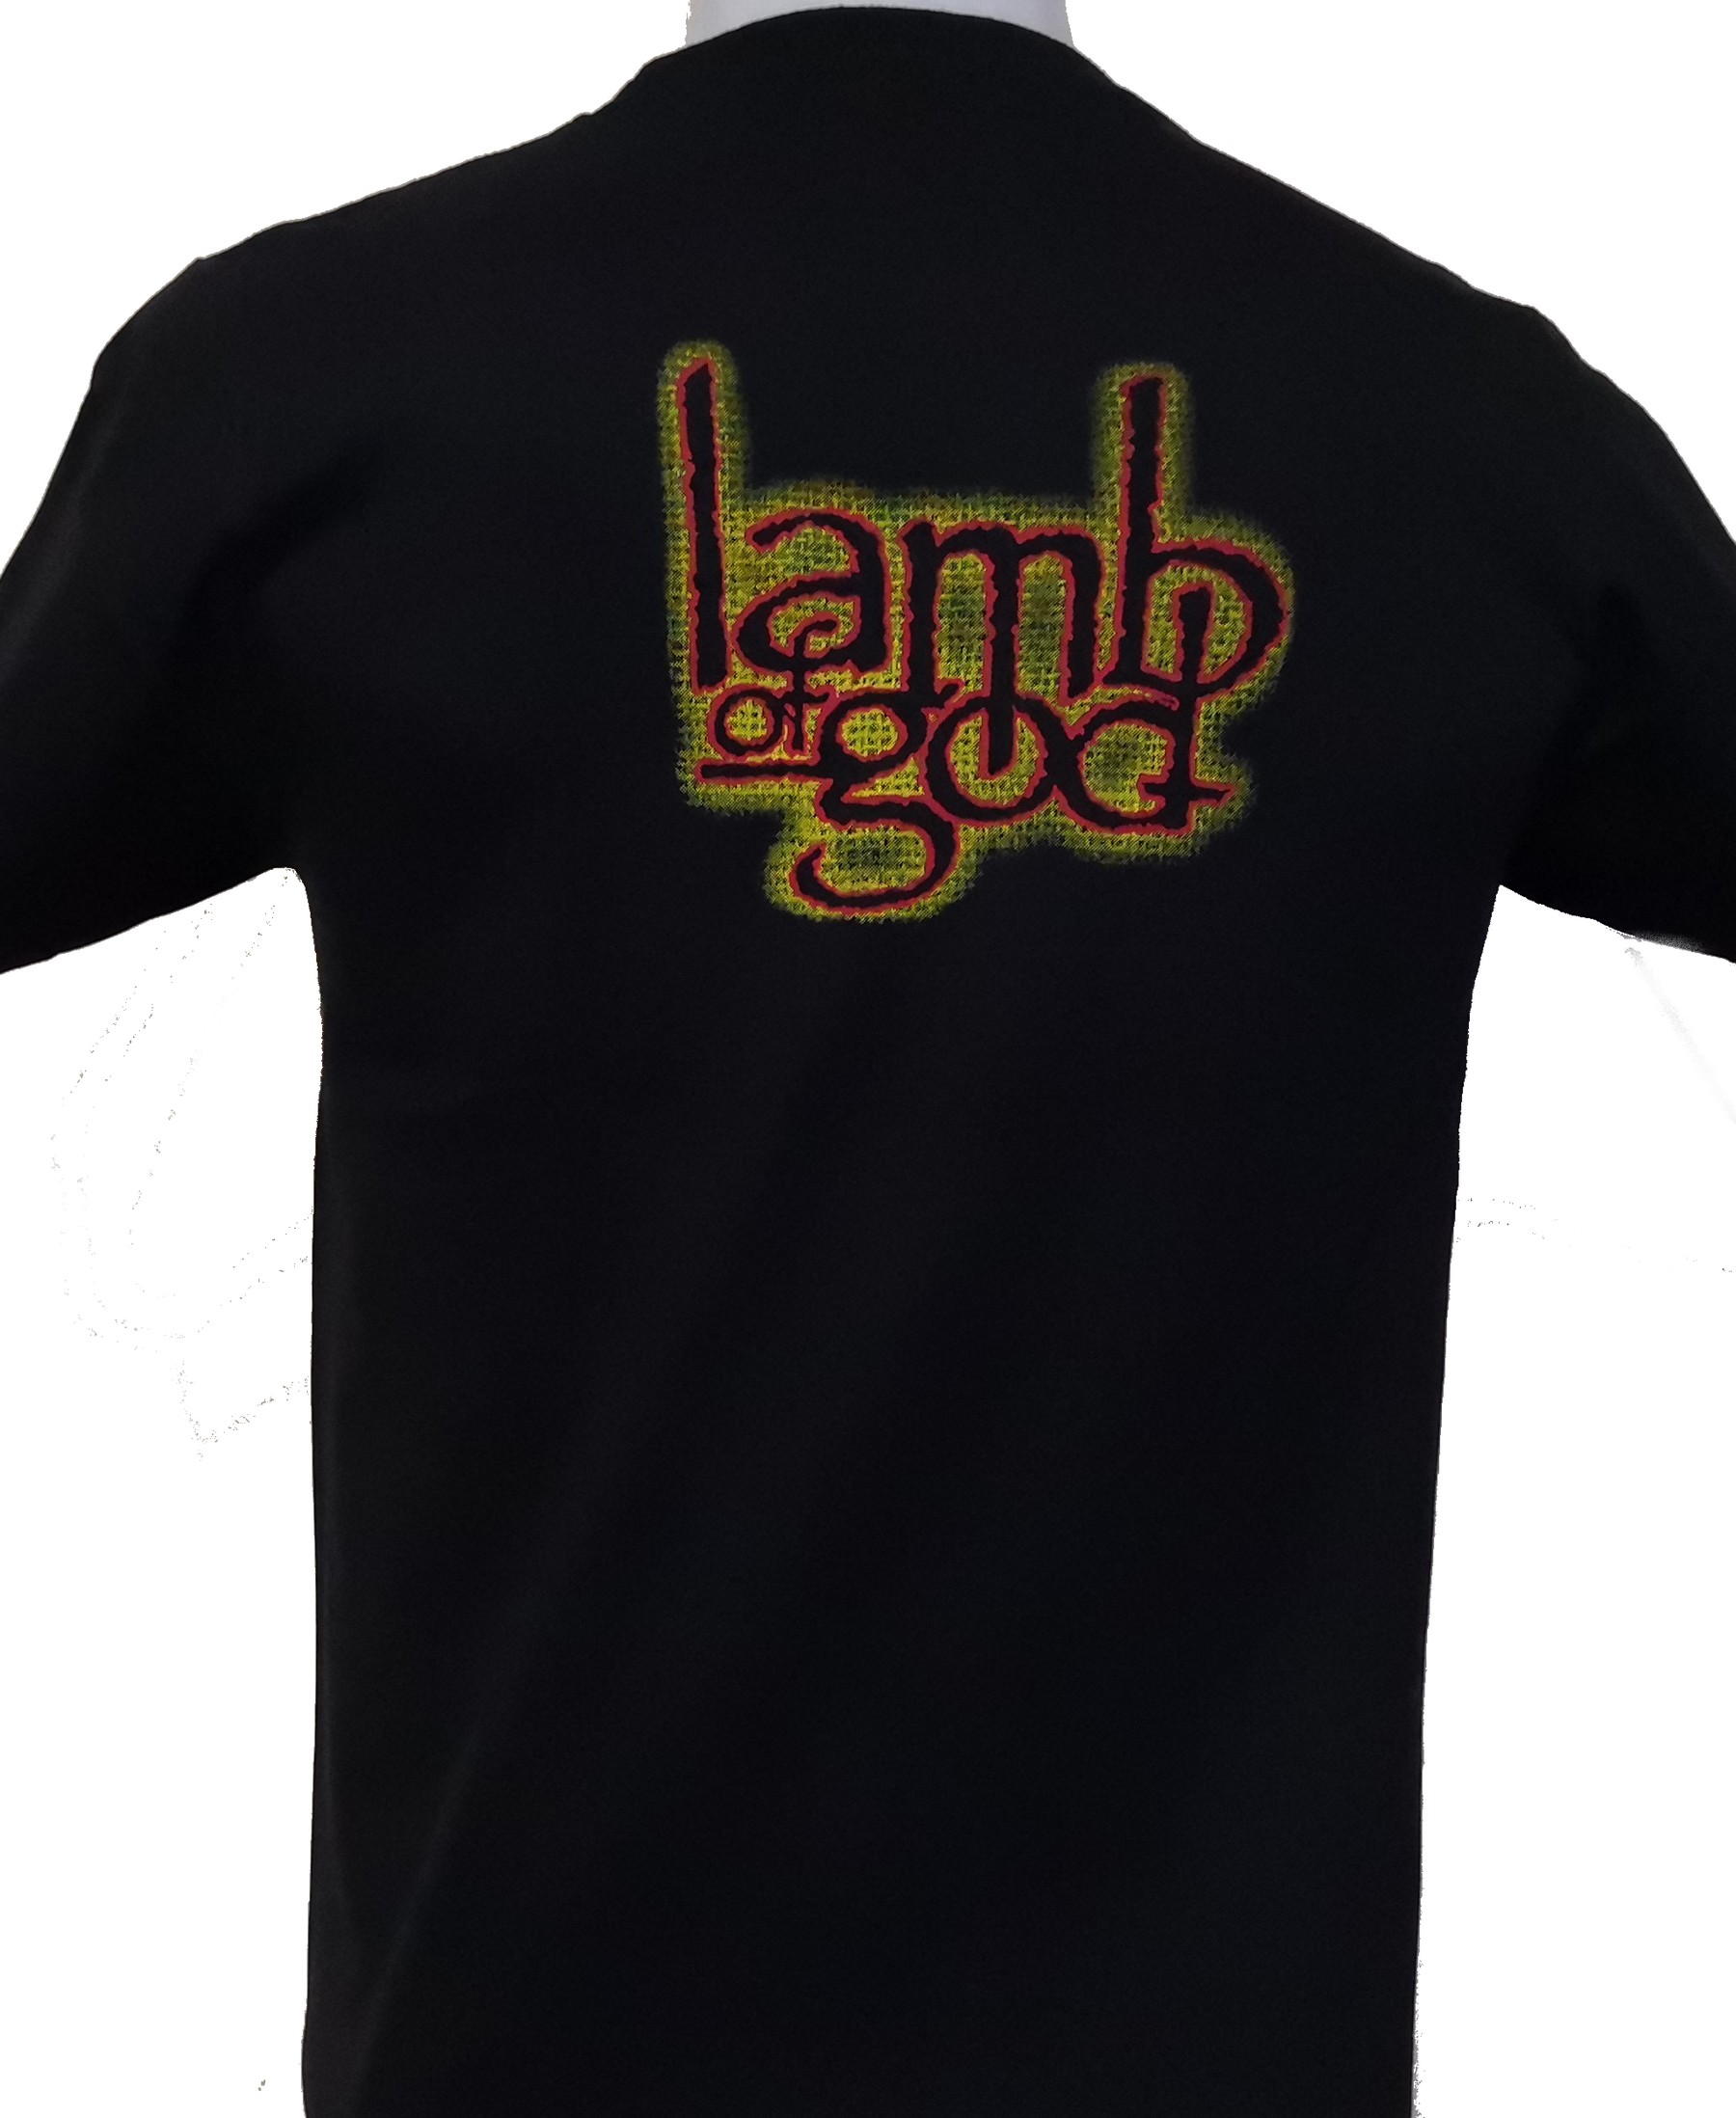 Lamb Of God t-shirt size S – RoxxBKK